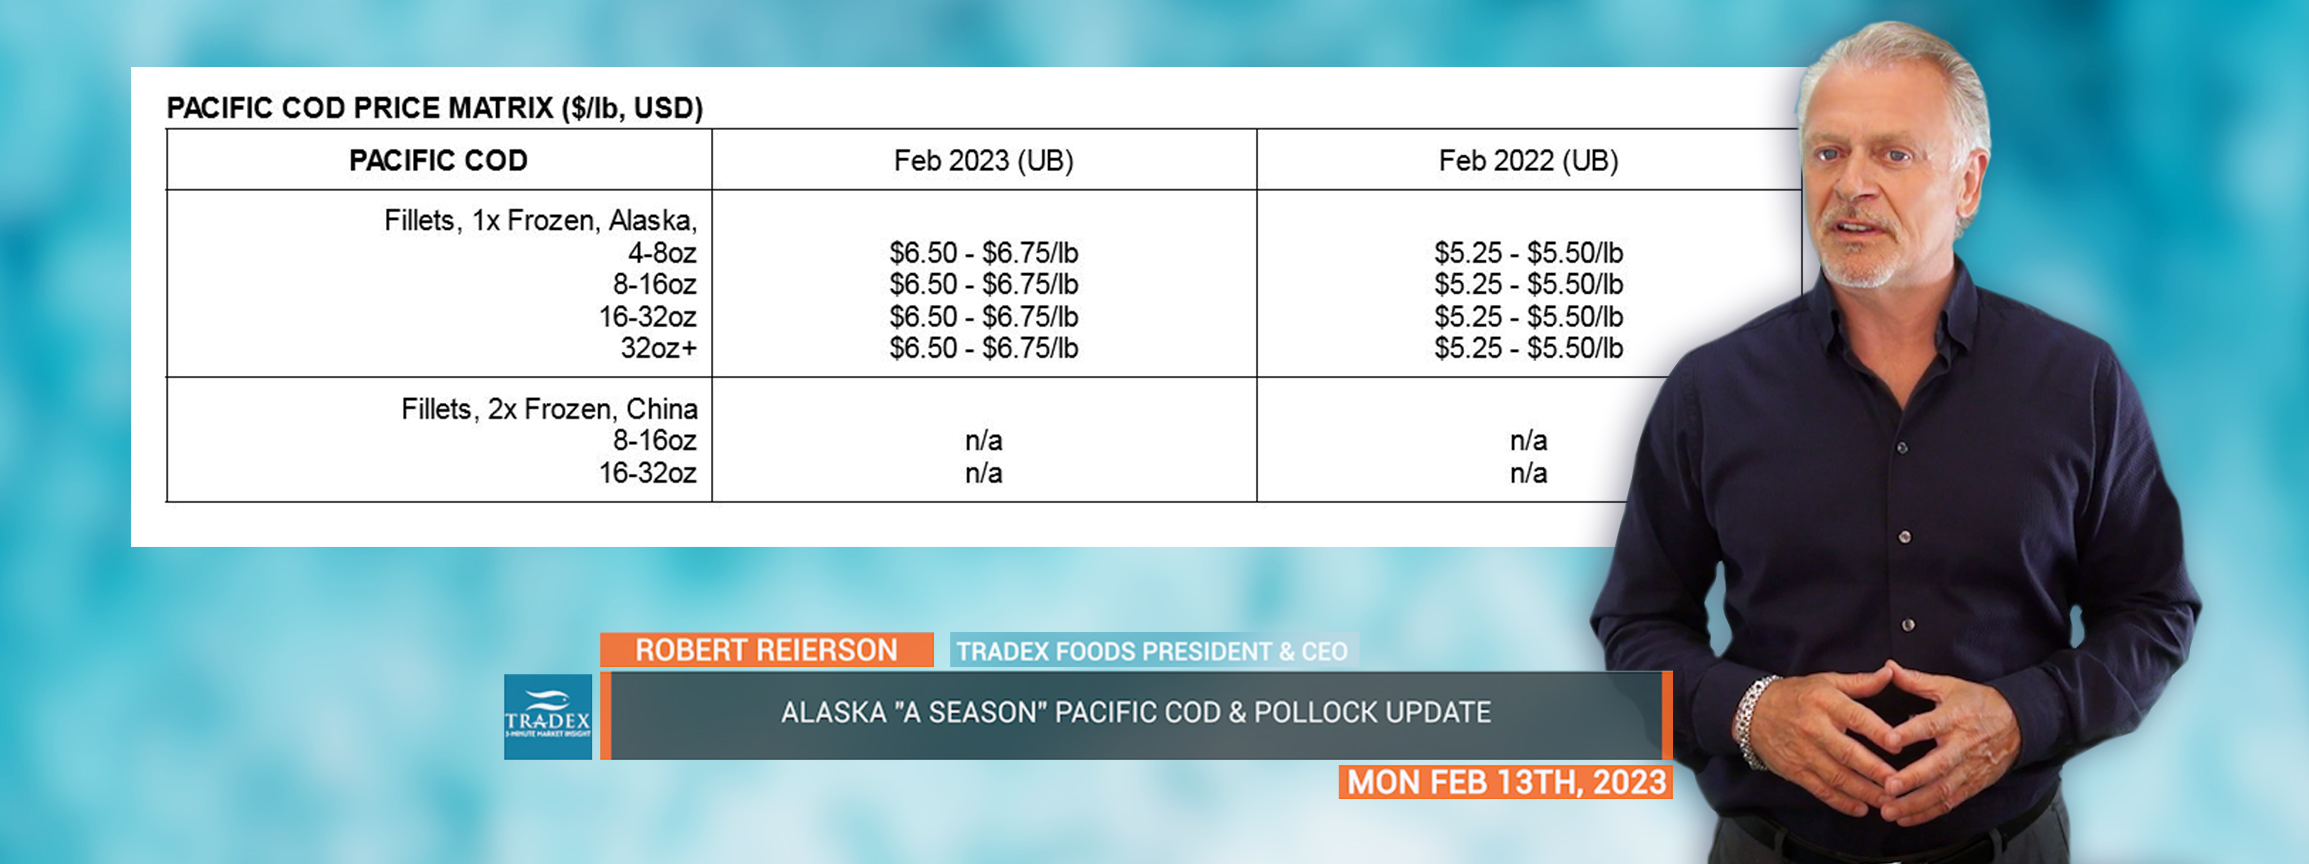 Pacific Cod Price Matrix